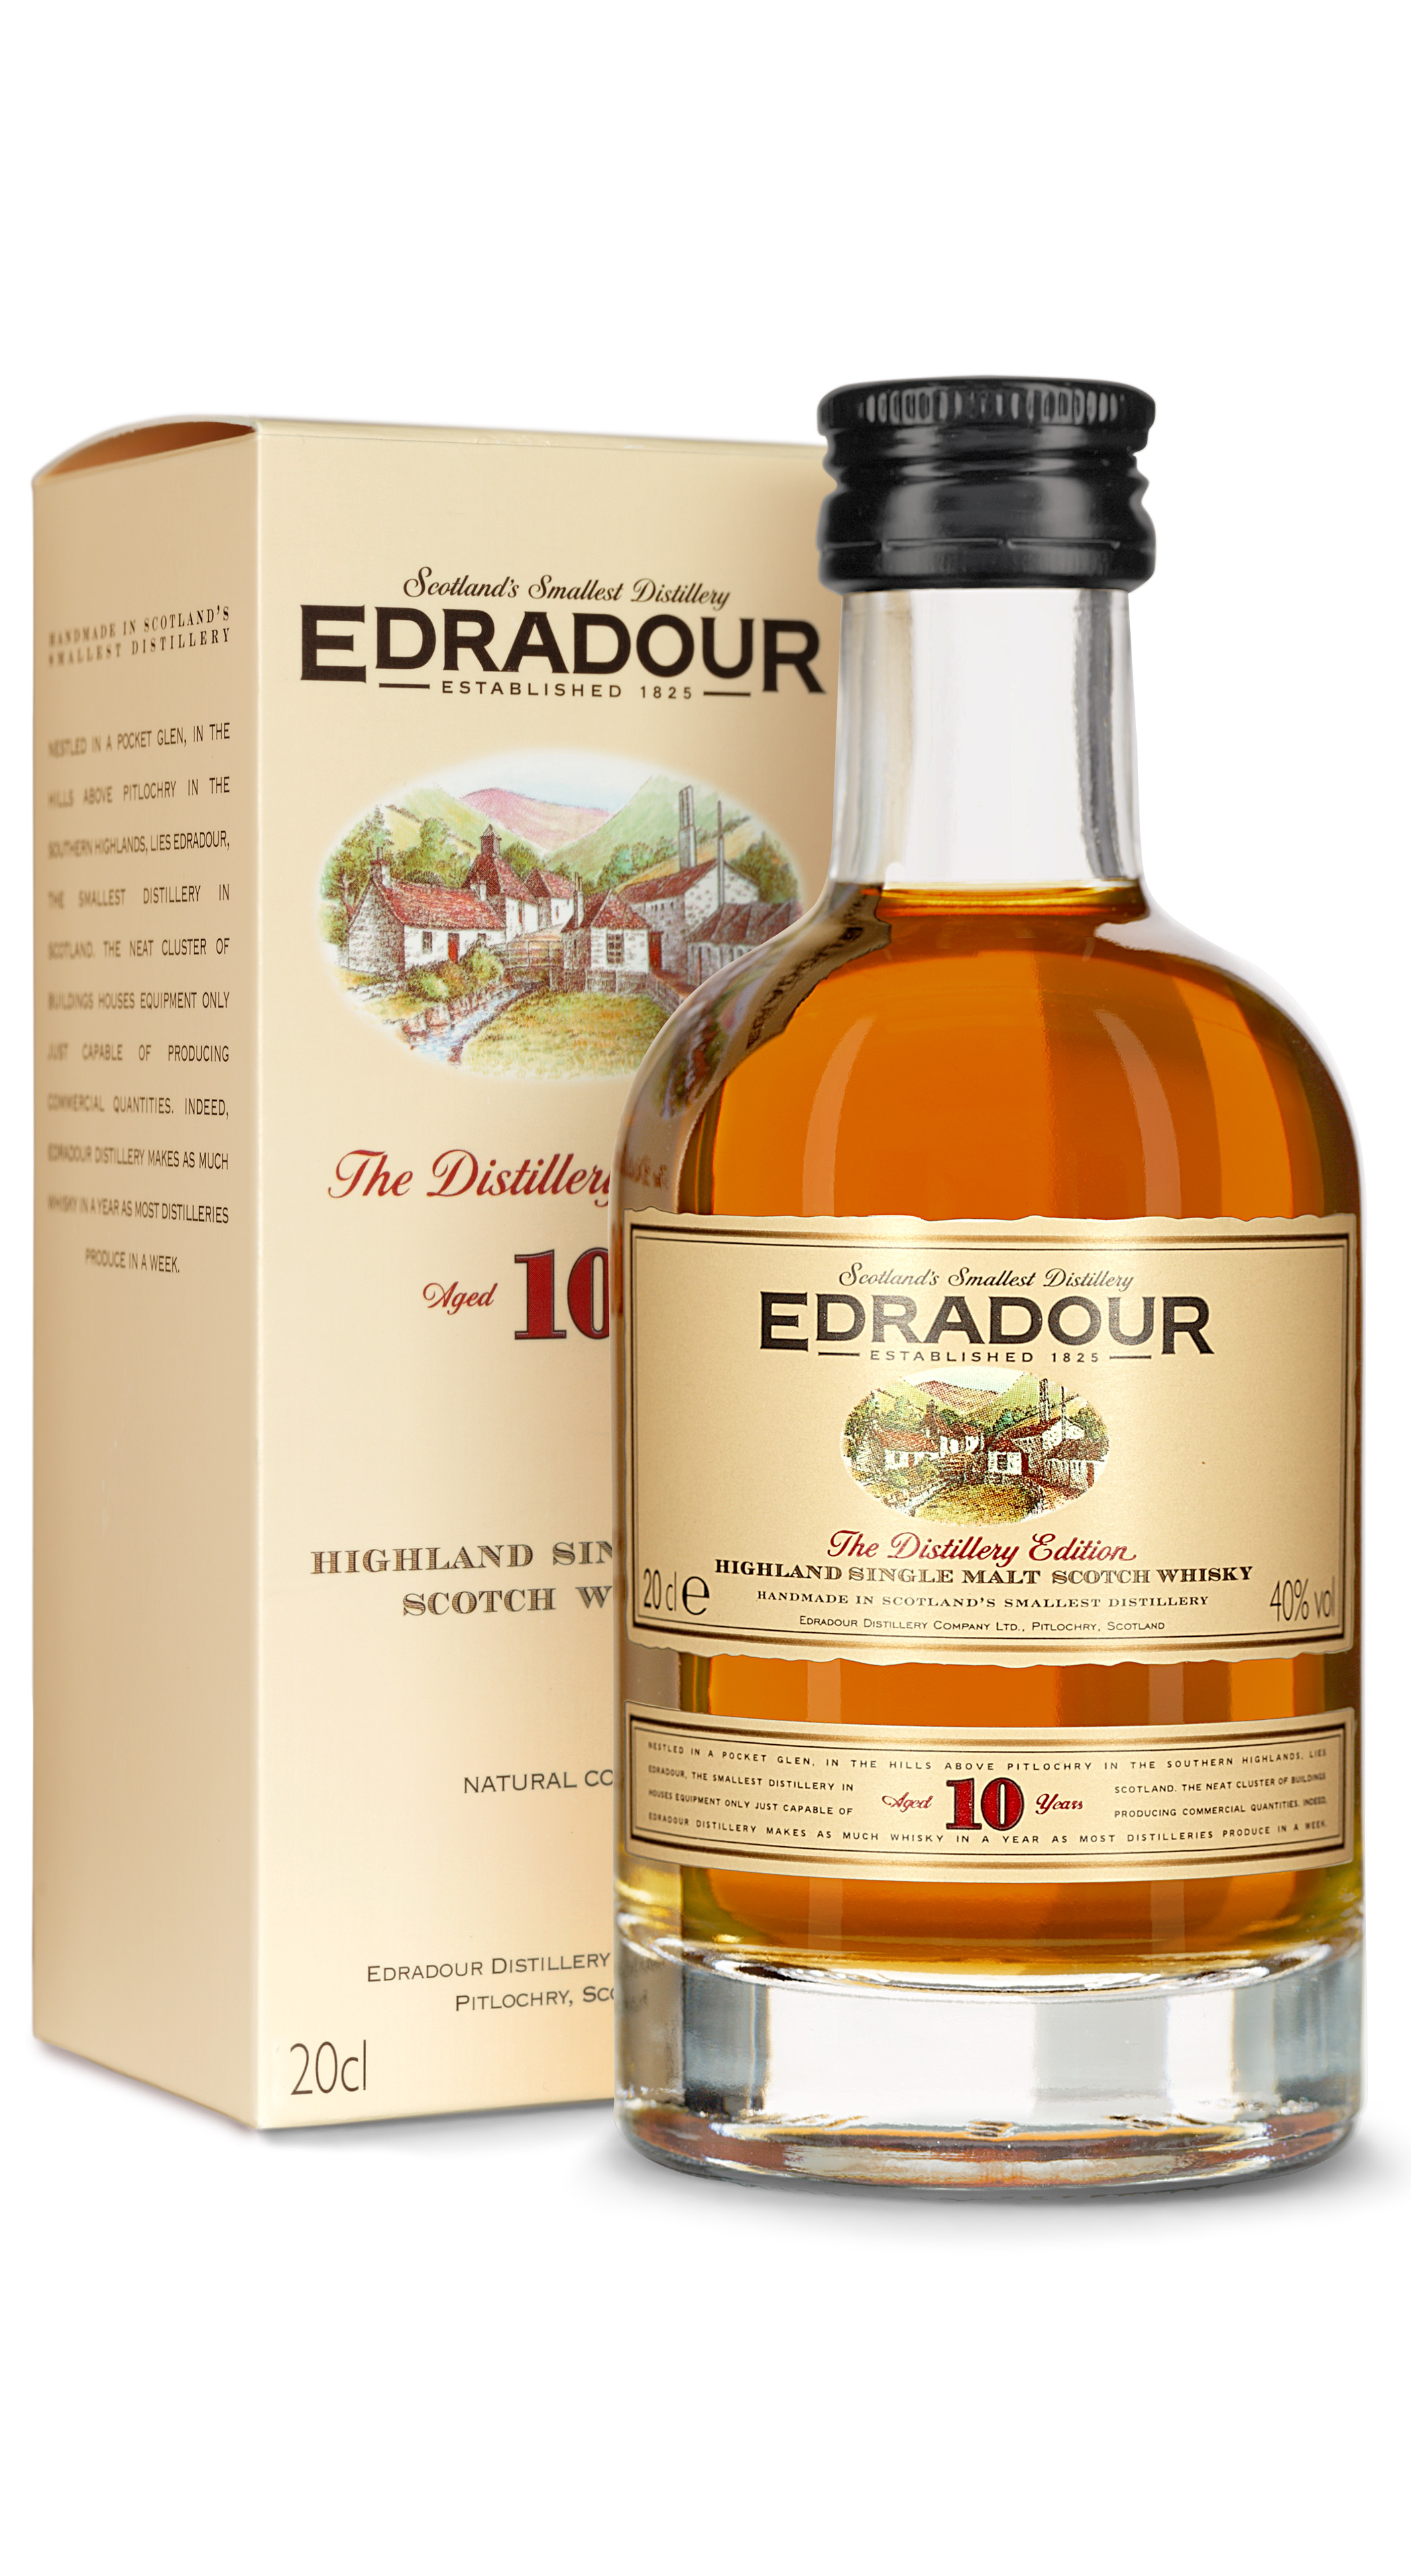 Edradour 10 Jahre Highland Single Malt Whisky 0,2 l für 18,90 € kaufen bei  Dr. Kochan Schnapskultur Fachgeschäft und Onlineshop | Dr. Kochan  Schnapskultur